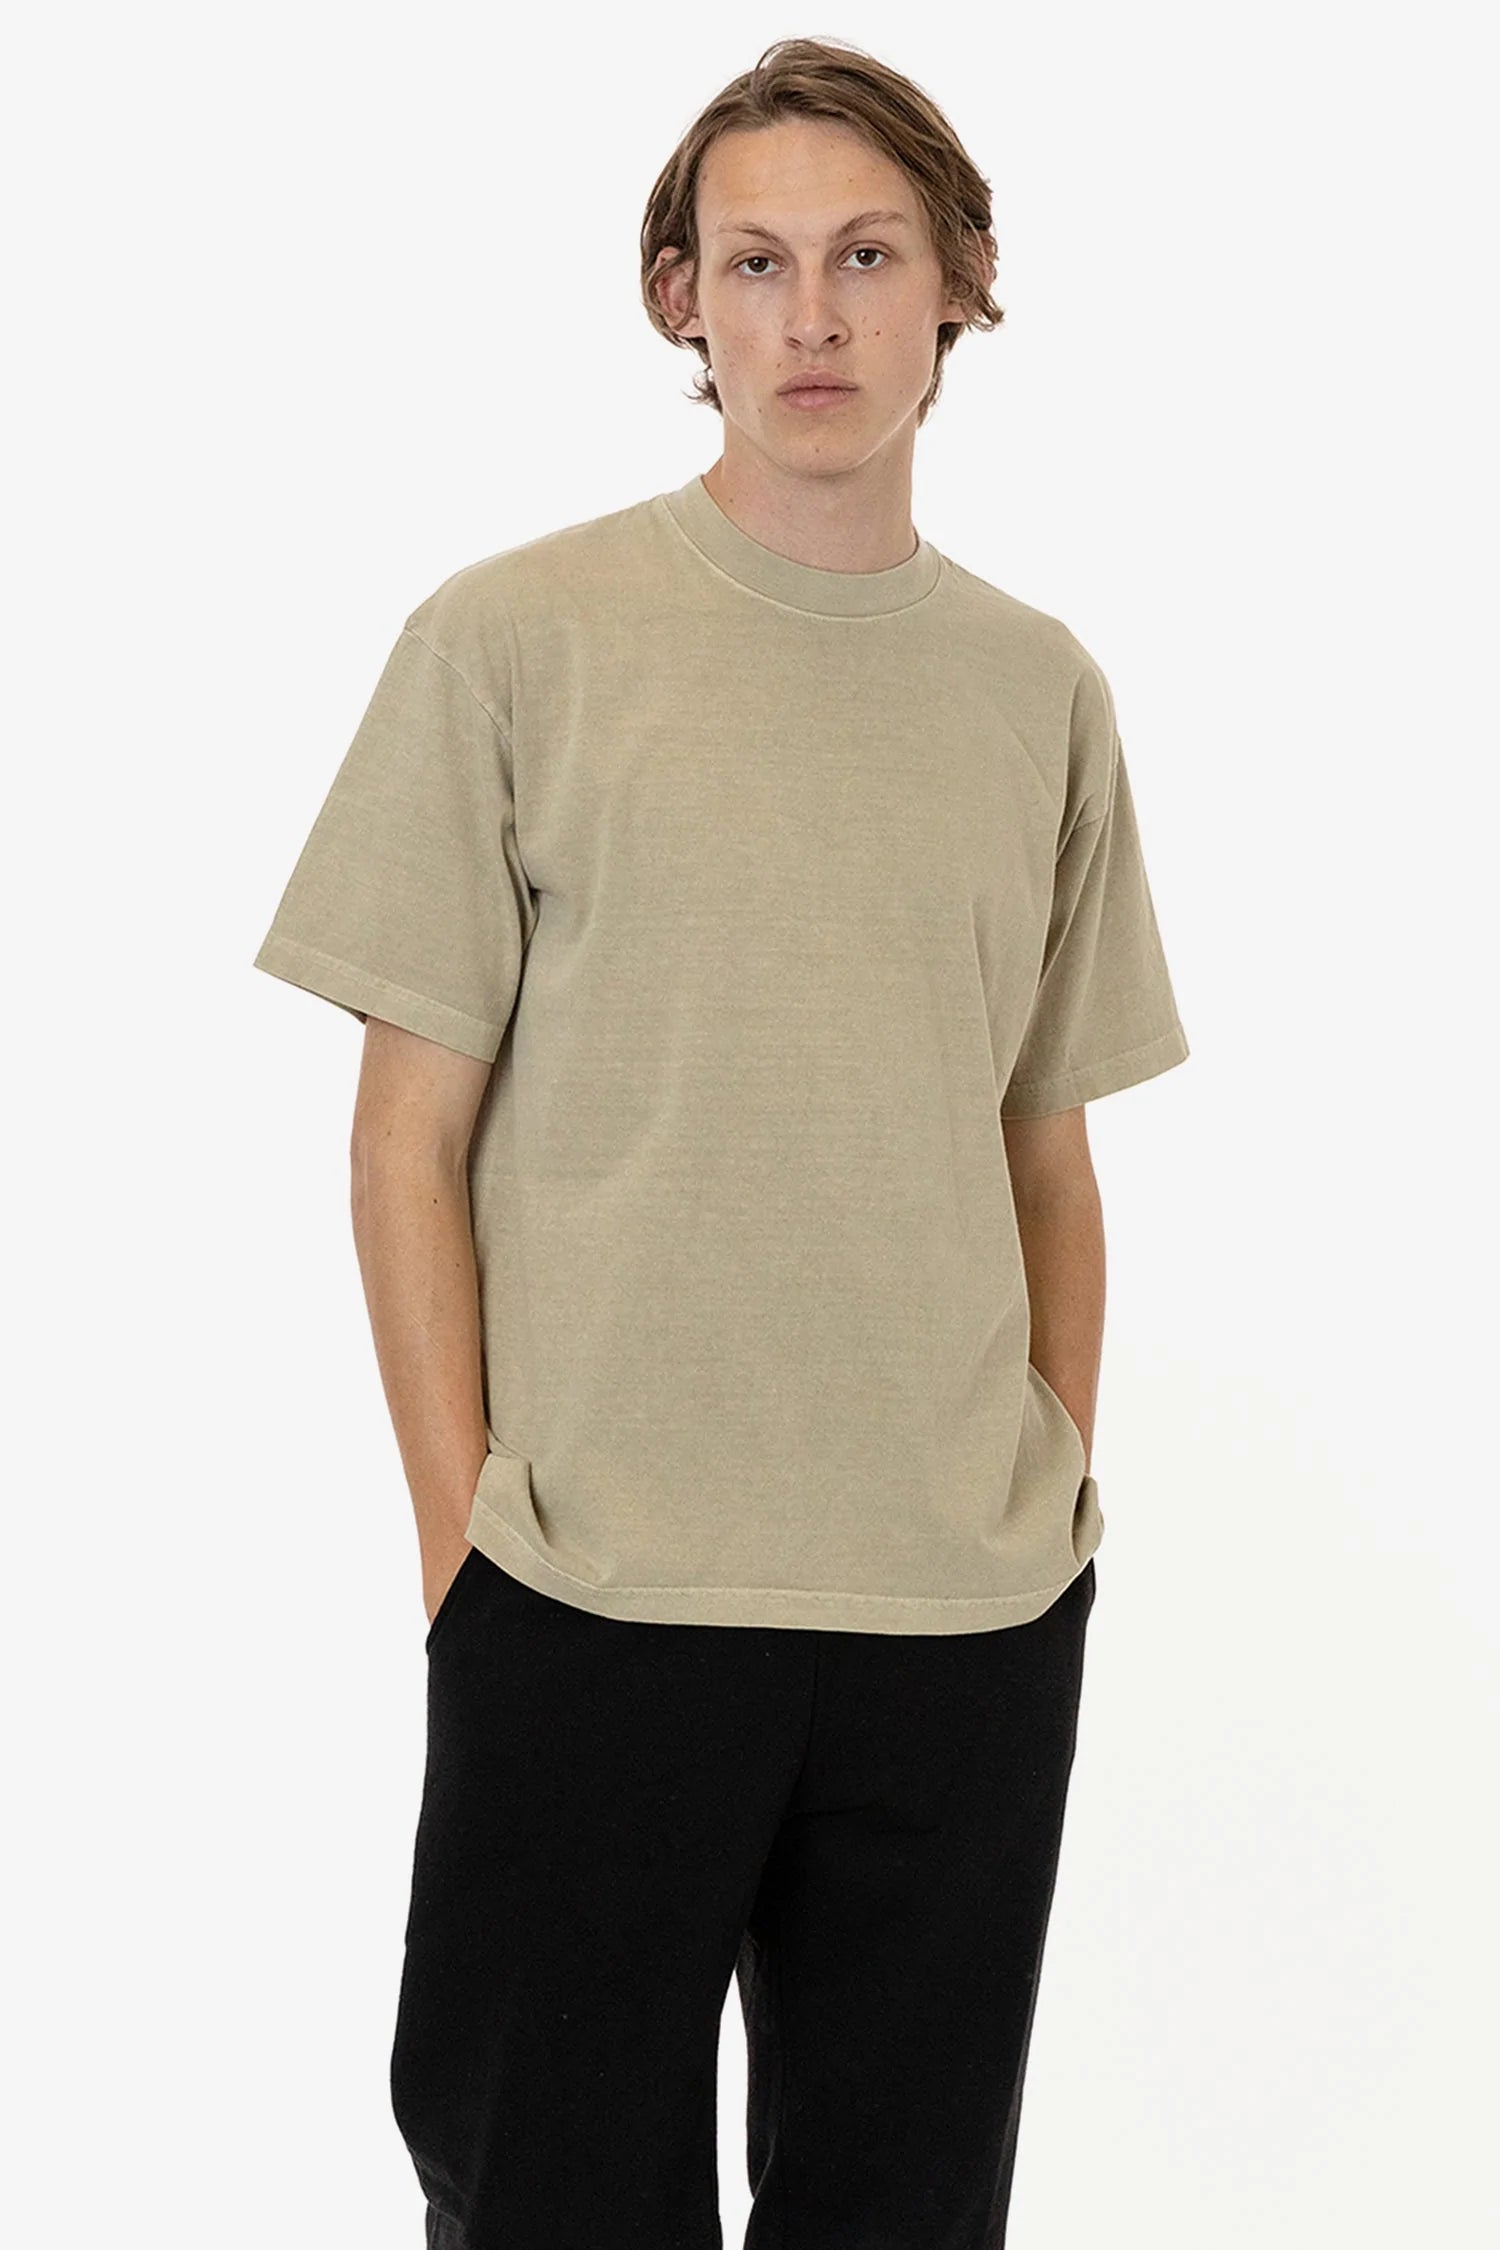 6.5 Oz. Garment Dye Crewneck T-Shirt | Regular Size | LA Apparel